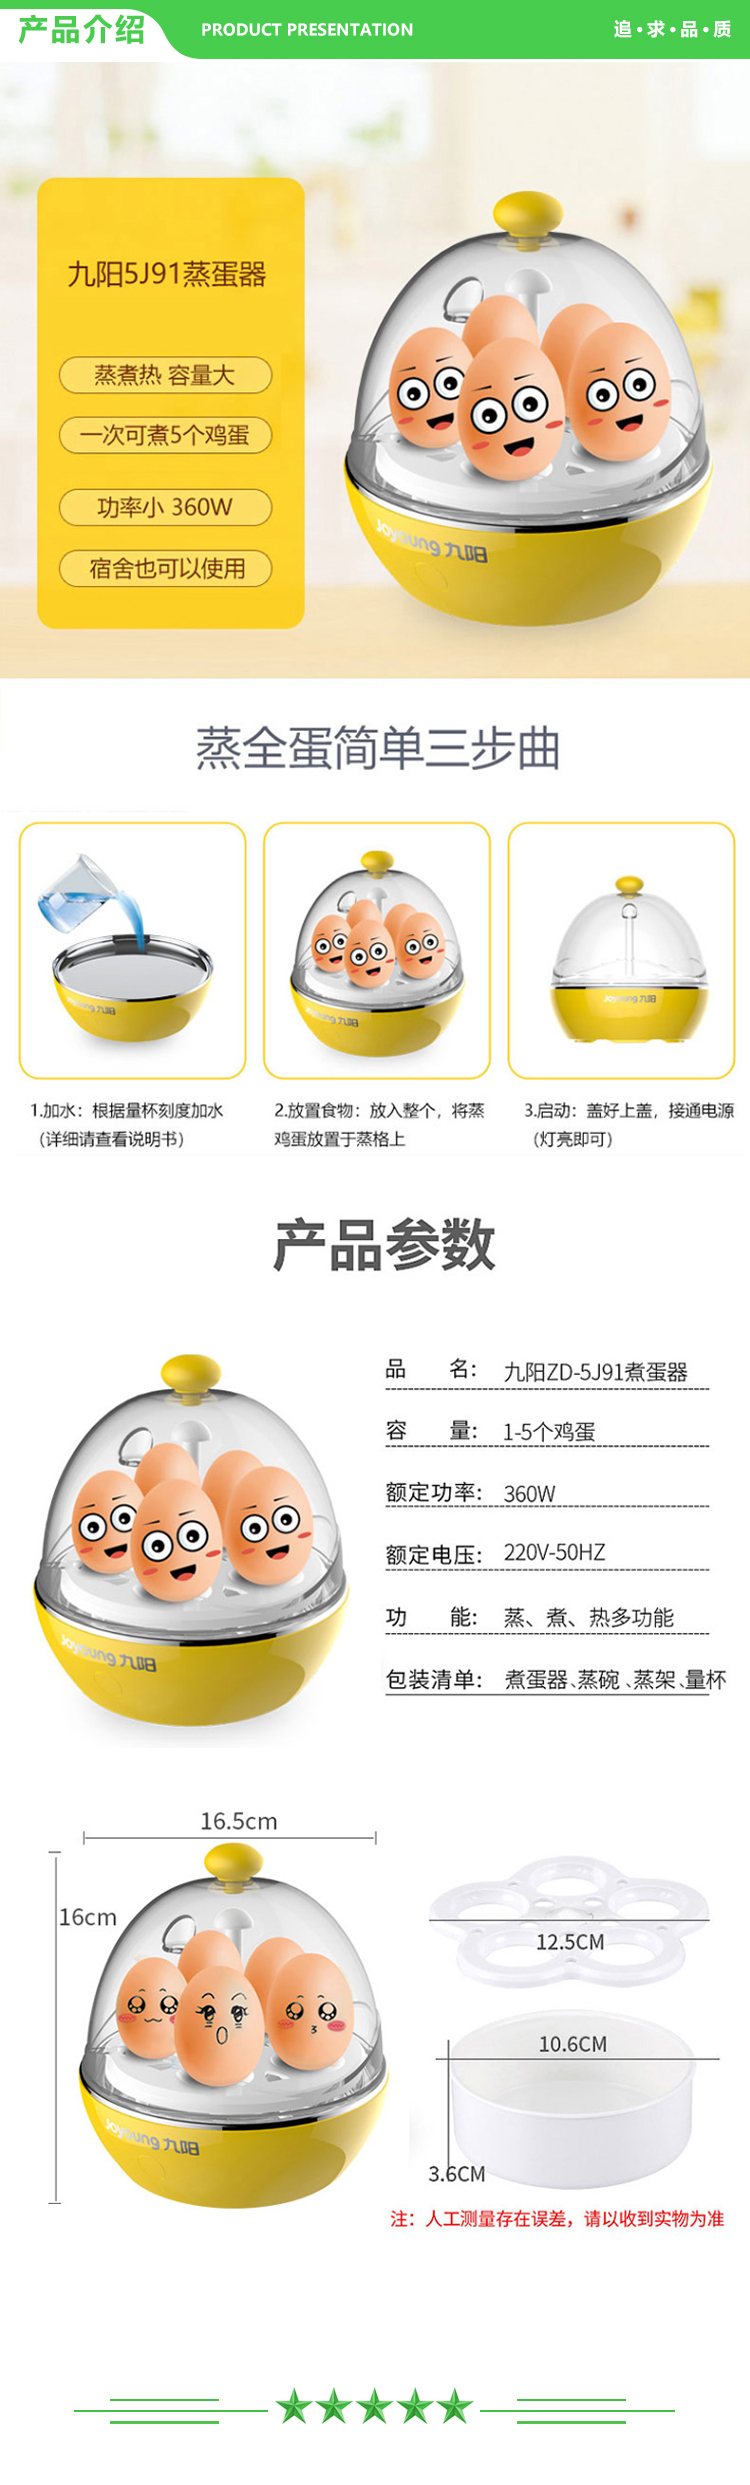 九阳 Joyoung ZD-5J91 煮蛋器早餐蒸蛋器家用小功率可煮5个煮蛋神器.jpg